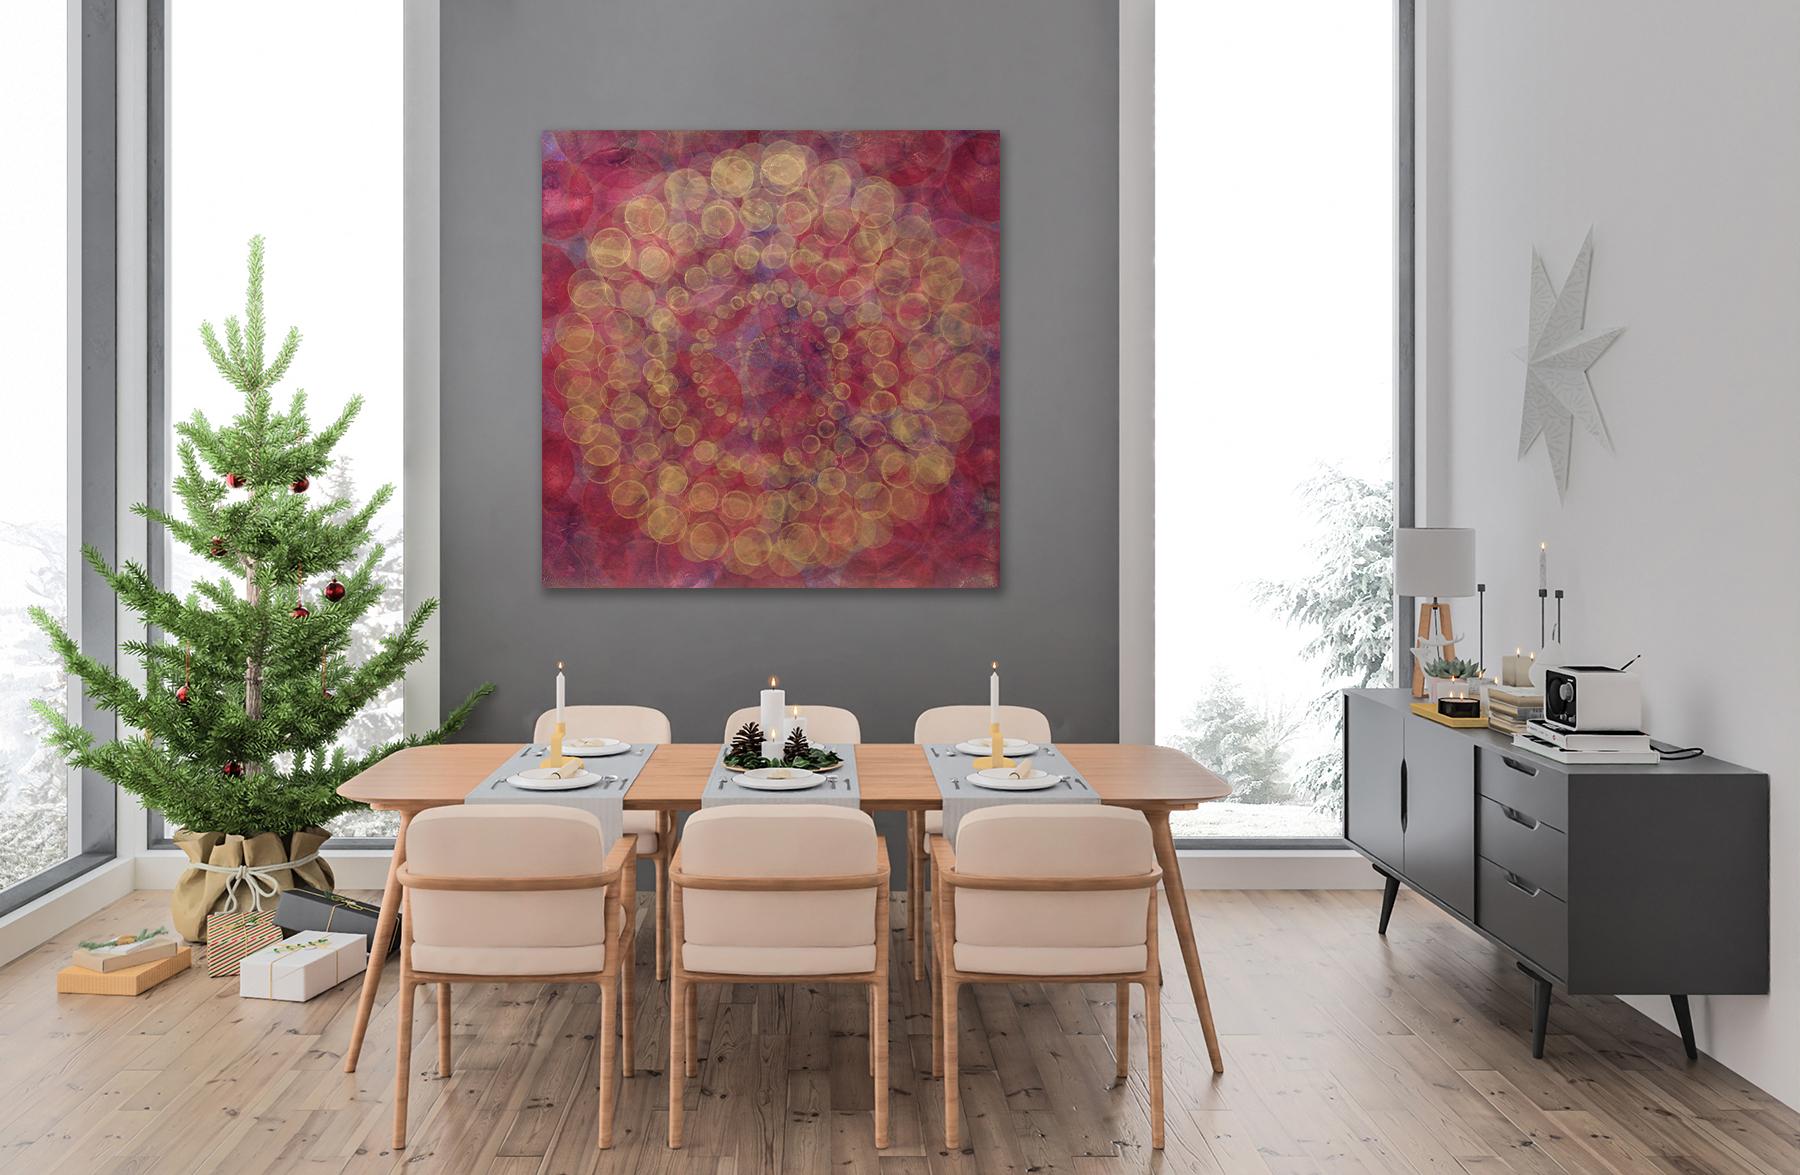 Dieses abstrakte Gemälde von Roger Mudre zeichnet sich durch eine warme rote und gelbe Farbpalette und leichte Schichten kreisförmiger Formen aus, die in einem größeren Kreis in der Mitte der Komposition angeordnet sind. Das Gemälde misst 60